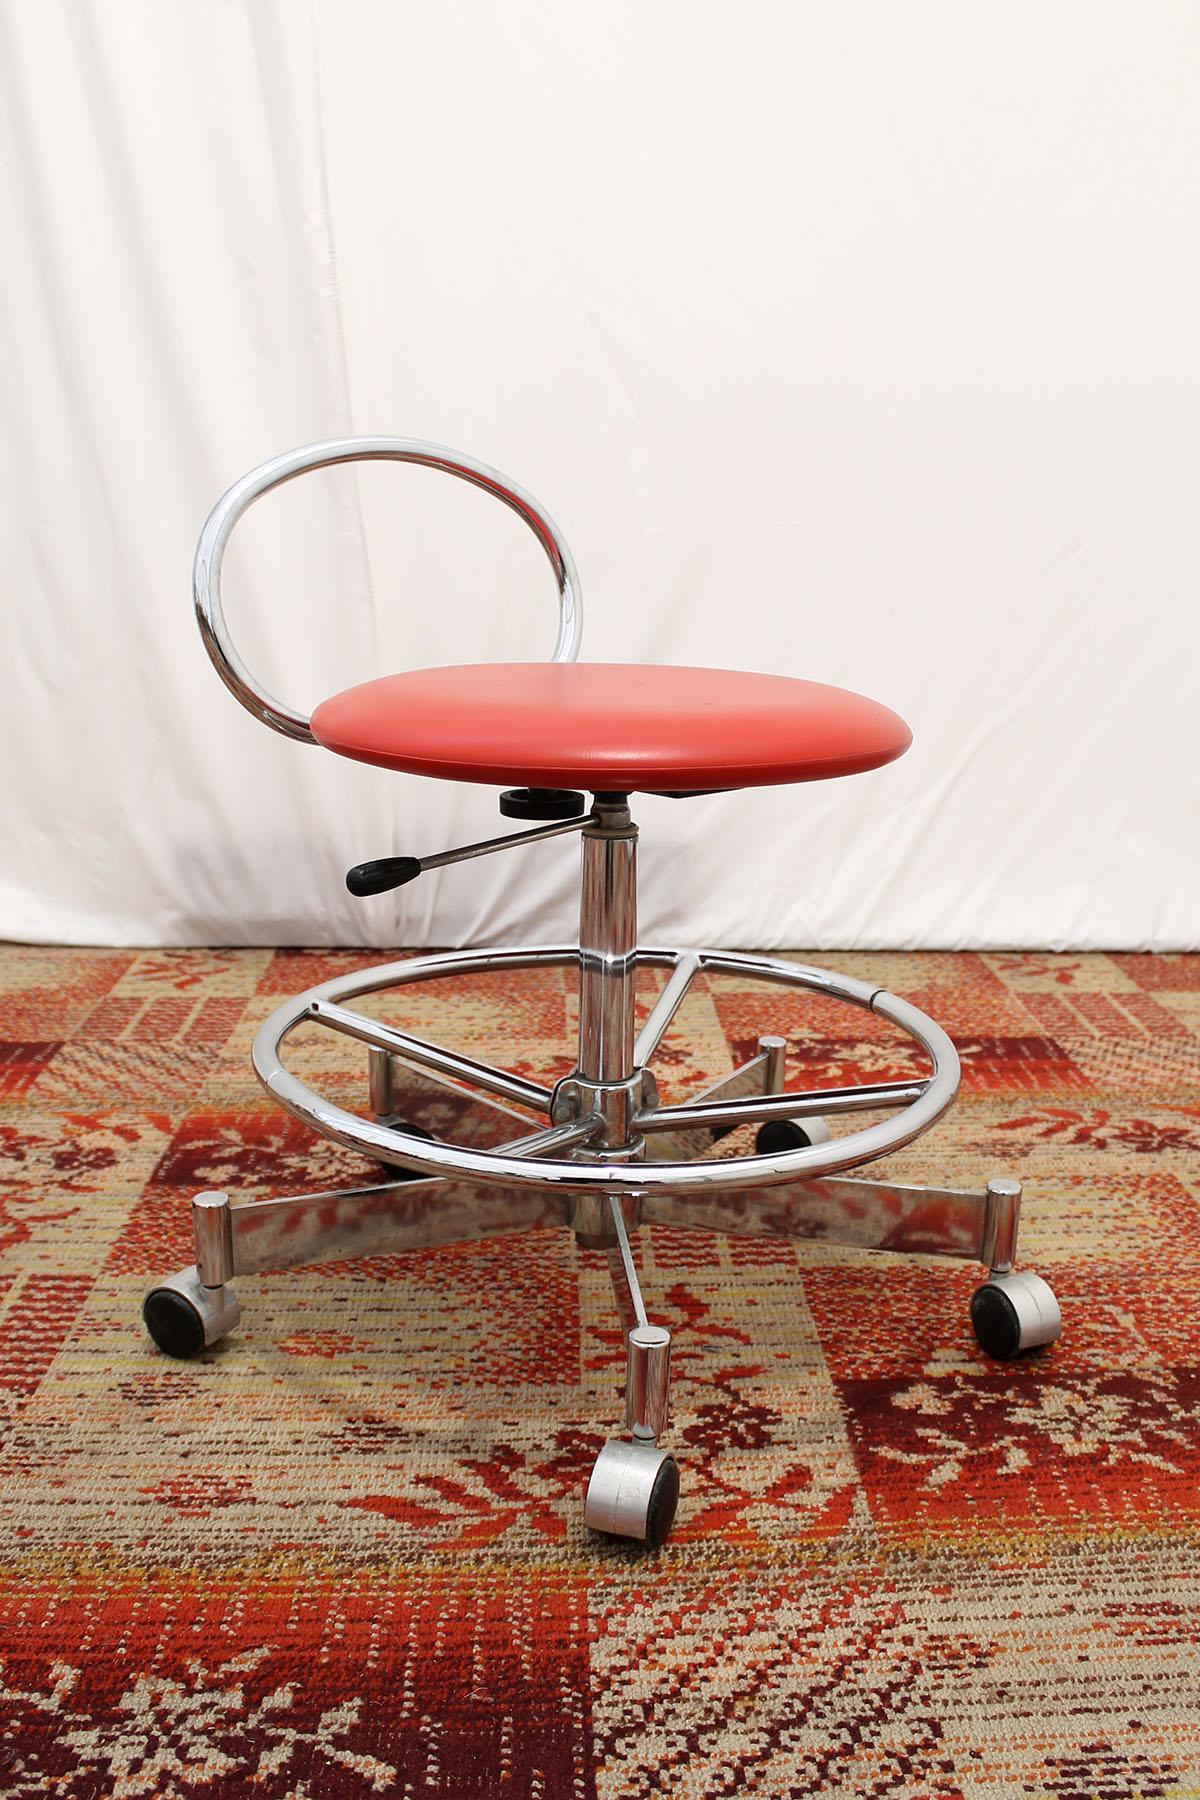 Dieser Vintage-Drehstuhl oder -Hocker wurde von der Firma Kovona in den 1980er Jahren hergestellt. Voll funktionsfähig, einstellbar, drehbar. Er ist aus Chrom und Kunstleder gefertigt. In fast ausgezeichnetem Zustand, wie ein neues Exemplar. 